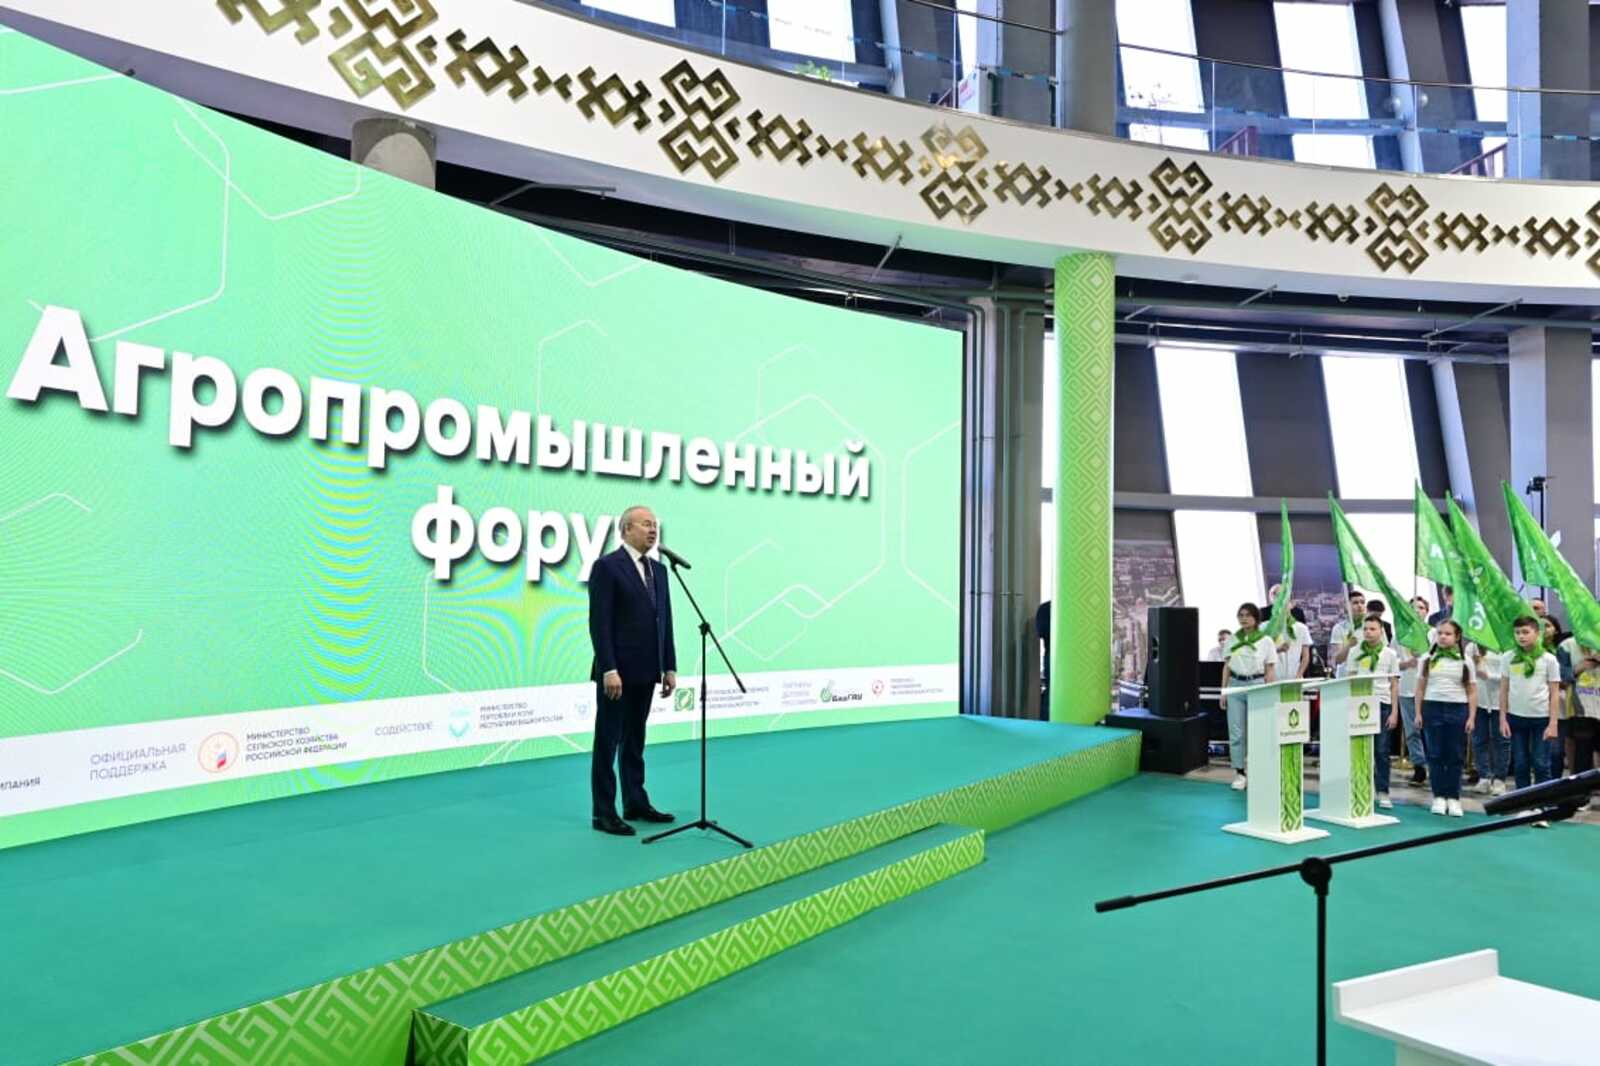 Андрей Назаров: Башкирия стала лидером в России по объемам производства мяса, молока и мёда